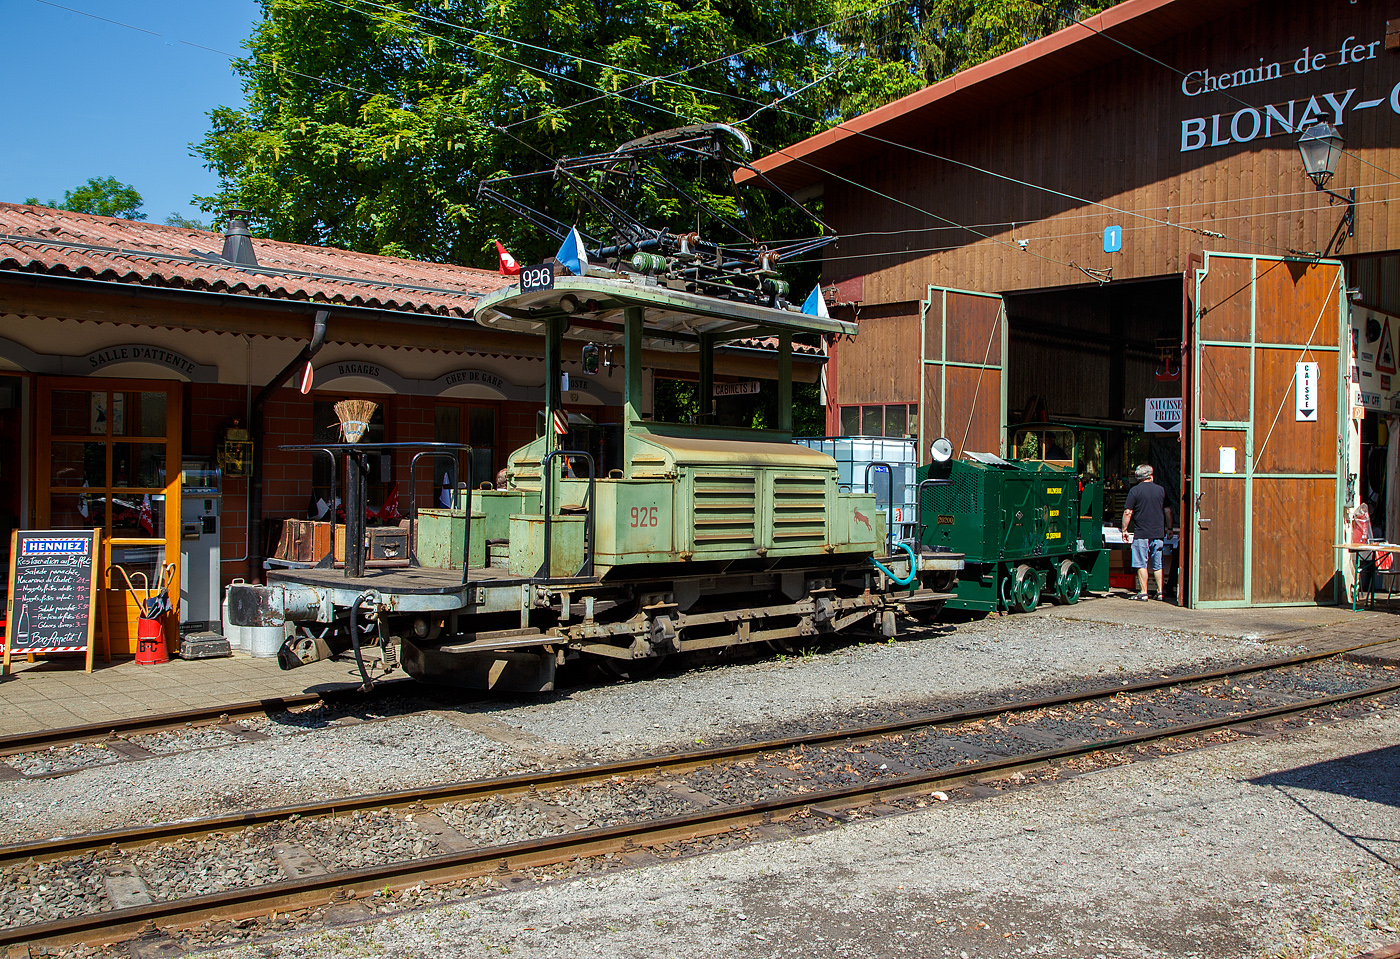 Mit einem 1m-Wassertank und einer Motorspritze ausgestatte, als Lschzug, der Te 2/2 926 der Museumsbahn Blonay-Chamby, ex VBZ (Verkehrsbetriebe Zrich) Schienentraktor Xe 2/2 – 1926, ex Xe 2/2 – 926, ex StStZ Xe 2/2 – 926, der Museumsbahn Blonay-Chamby am 27.05.2023 im Museum Chaulin. Dahinter der kleine ex MOB Schienentraktor Tm 2/2 Nr. 1, ex Holzwerk Rieder, der Museumsbahn.

Der Te 2/2 Schienentraktor wurde 1935 von der damaligen Stdtische Straenbahn Zrich (StStZ) selbst gebaut, der elektrische Teil ist von der Maschinenfabrik Oerlikon (MFO). Gebaut worden sind, zwische1930 und 1935, drei dieser Rangiermaschinen Nr. 924-926 (ab 1946 in Nr. 1924 bis1926), dabei wurden Untergestell, Elektrik und Motoren von Ce 2/2 Triebwagen der Serie 57-84 (mit markantem Peckham-Untergestell) verwendet. 

Die drei Manvrierwagen von erhielten zur Erleichterung der Fahrtrichtungswechsel von Anfang an einen Pantografen statt des umstndlichen Lyrabgels. Die Rangierer fgten in den Depots den Triebwagen fr die Hauptverkehrszeit die Beiwagen zu. Die Fhrerstnde waren lngs eingebaut, mit freier Sicht auf die Kupplungen, so konnte man mit ihnen sozusagen millimetergenau anfahren. Ihr grner Anstrich und das charakteristische Fahrverhalten trugen ihnen den Spitznamen „Laubfrosch“ ein.

Speziell fr Zrich war die groe Flotte von Rangierfahrzeugen. Diese hatten die Aufgabe, fr die Stozeit Verstrkungswagen beizustellen und danach wieder von den Tramzgen abzuziehen. Dazu gehrten auch Fahrten zwischen dem zugeteilten Depot und den Bereitstellungsgleisen an Wendeschleifen. Ende der 1960ziger Jahre wurde, durch die groe Zahl angeschafften Mirage-Gelenkzge, die Flotte von 24 Stck Rangierfahrzeugen berflssig. Das Beistellen und Abziehen von Tramanhngern vor und nach der Stozeit war nun berflssig. So war 1969 war ihre Zeit abgelaufen. Whrend die beiden Xe 2/2 1924 und 1025 Stck abgebrochen wurden, bergab die Stadt Zrich Xe 2/2 1926 an die eben im Aufbau begriffene Museumsbahn Blonay - Chamby BC. Dort leistete das gut unterhaltene und sehr bewegliche Triebfahrzeug wertvolle Dienste bei der Wiederinbetriebnahme der Strecke und beim Bau des Depots. Heute wird der „Laubfrosch“ mit seiner alten Zrcher Nummer 926 bestimmungsgem als Rangierfahrzeug auf dem Depotareal der BC benutzt. Hier kann der Laubfrosch seine Strken ausspielen. Fr den Einsatz auf der Museumsbahn musste Xe 2/2 926 die +GF+-Kupplung gegen eine herkmmliche Mittelpufferkupplung tauschen. Um den Betrieb unter der Spannung von 1000 V DB (MOB-GFM) zu ermglichen, wurde ein zustzlicher Widerstand montiert, die Straenbahn Zrich fuhrt ja unter 700 V DC. Trotz der zustzlichen Widerstnde leistet er sehr gute Arbeitet bei der BC. Bei der Museumsbahn Blonay–Chamby tgt der Te 926 nicht den Spitznamen „Laubfrosch“ sondern „Le Bouc“ (Der Bock).

Hier wurde das Fahrzeug prventiv als Lschfahrzeug, fr evtl. Bekmpfung von Bschungsbrnden nach Funkenwurf durch die Dampflokomotive, vorgehalten. Gelegentlich rckt die BC Xe 2/2 926 mit dem Sprengwagen Xe 2/2 1, ex Straenbahn Biel aus, der noch nicht wieder mit Fahrmotoren ausgerstet ist.

TECHNISCHE DATEN:
Spurweite: 1.000 mm (Meterspur)
Gewicht: 9,3 t
Hchstgeschwindigkeit: 36 Km/h
Leistung: 2 x 44 kW = 88 kW (120 PS)
Triebraddurchmesser: 840 mm (neu)
Getriebebersetzung: 1:4,277
Spannung: (ursprnglich) 700 V DC, bei der BC 1000 V DC

Quellen: BC, Drehscheibe